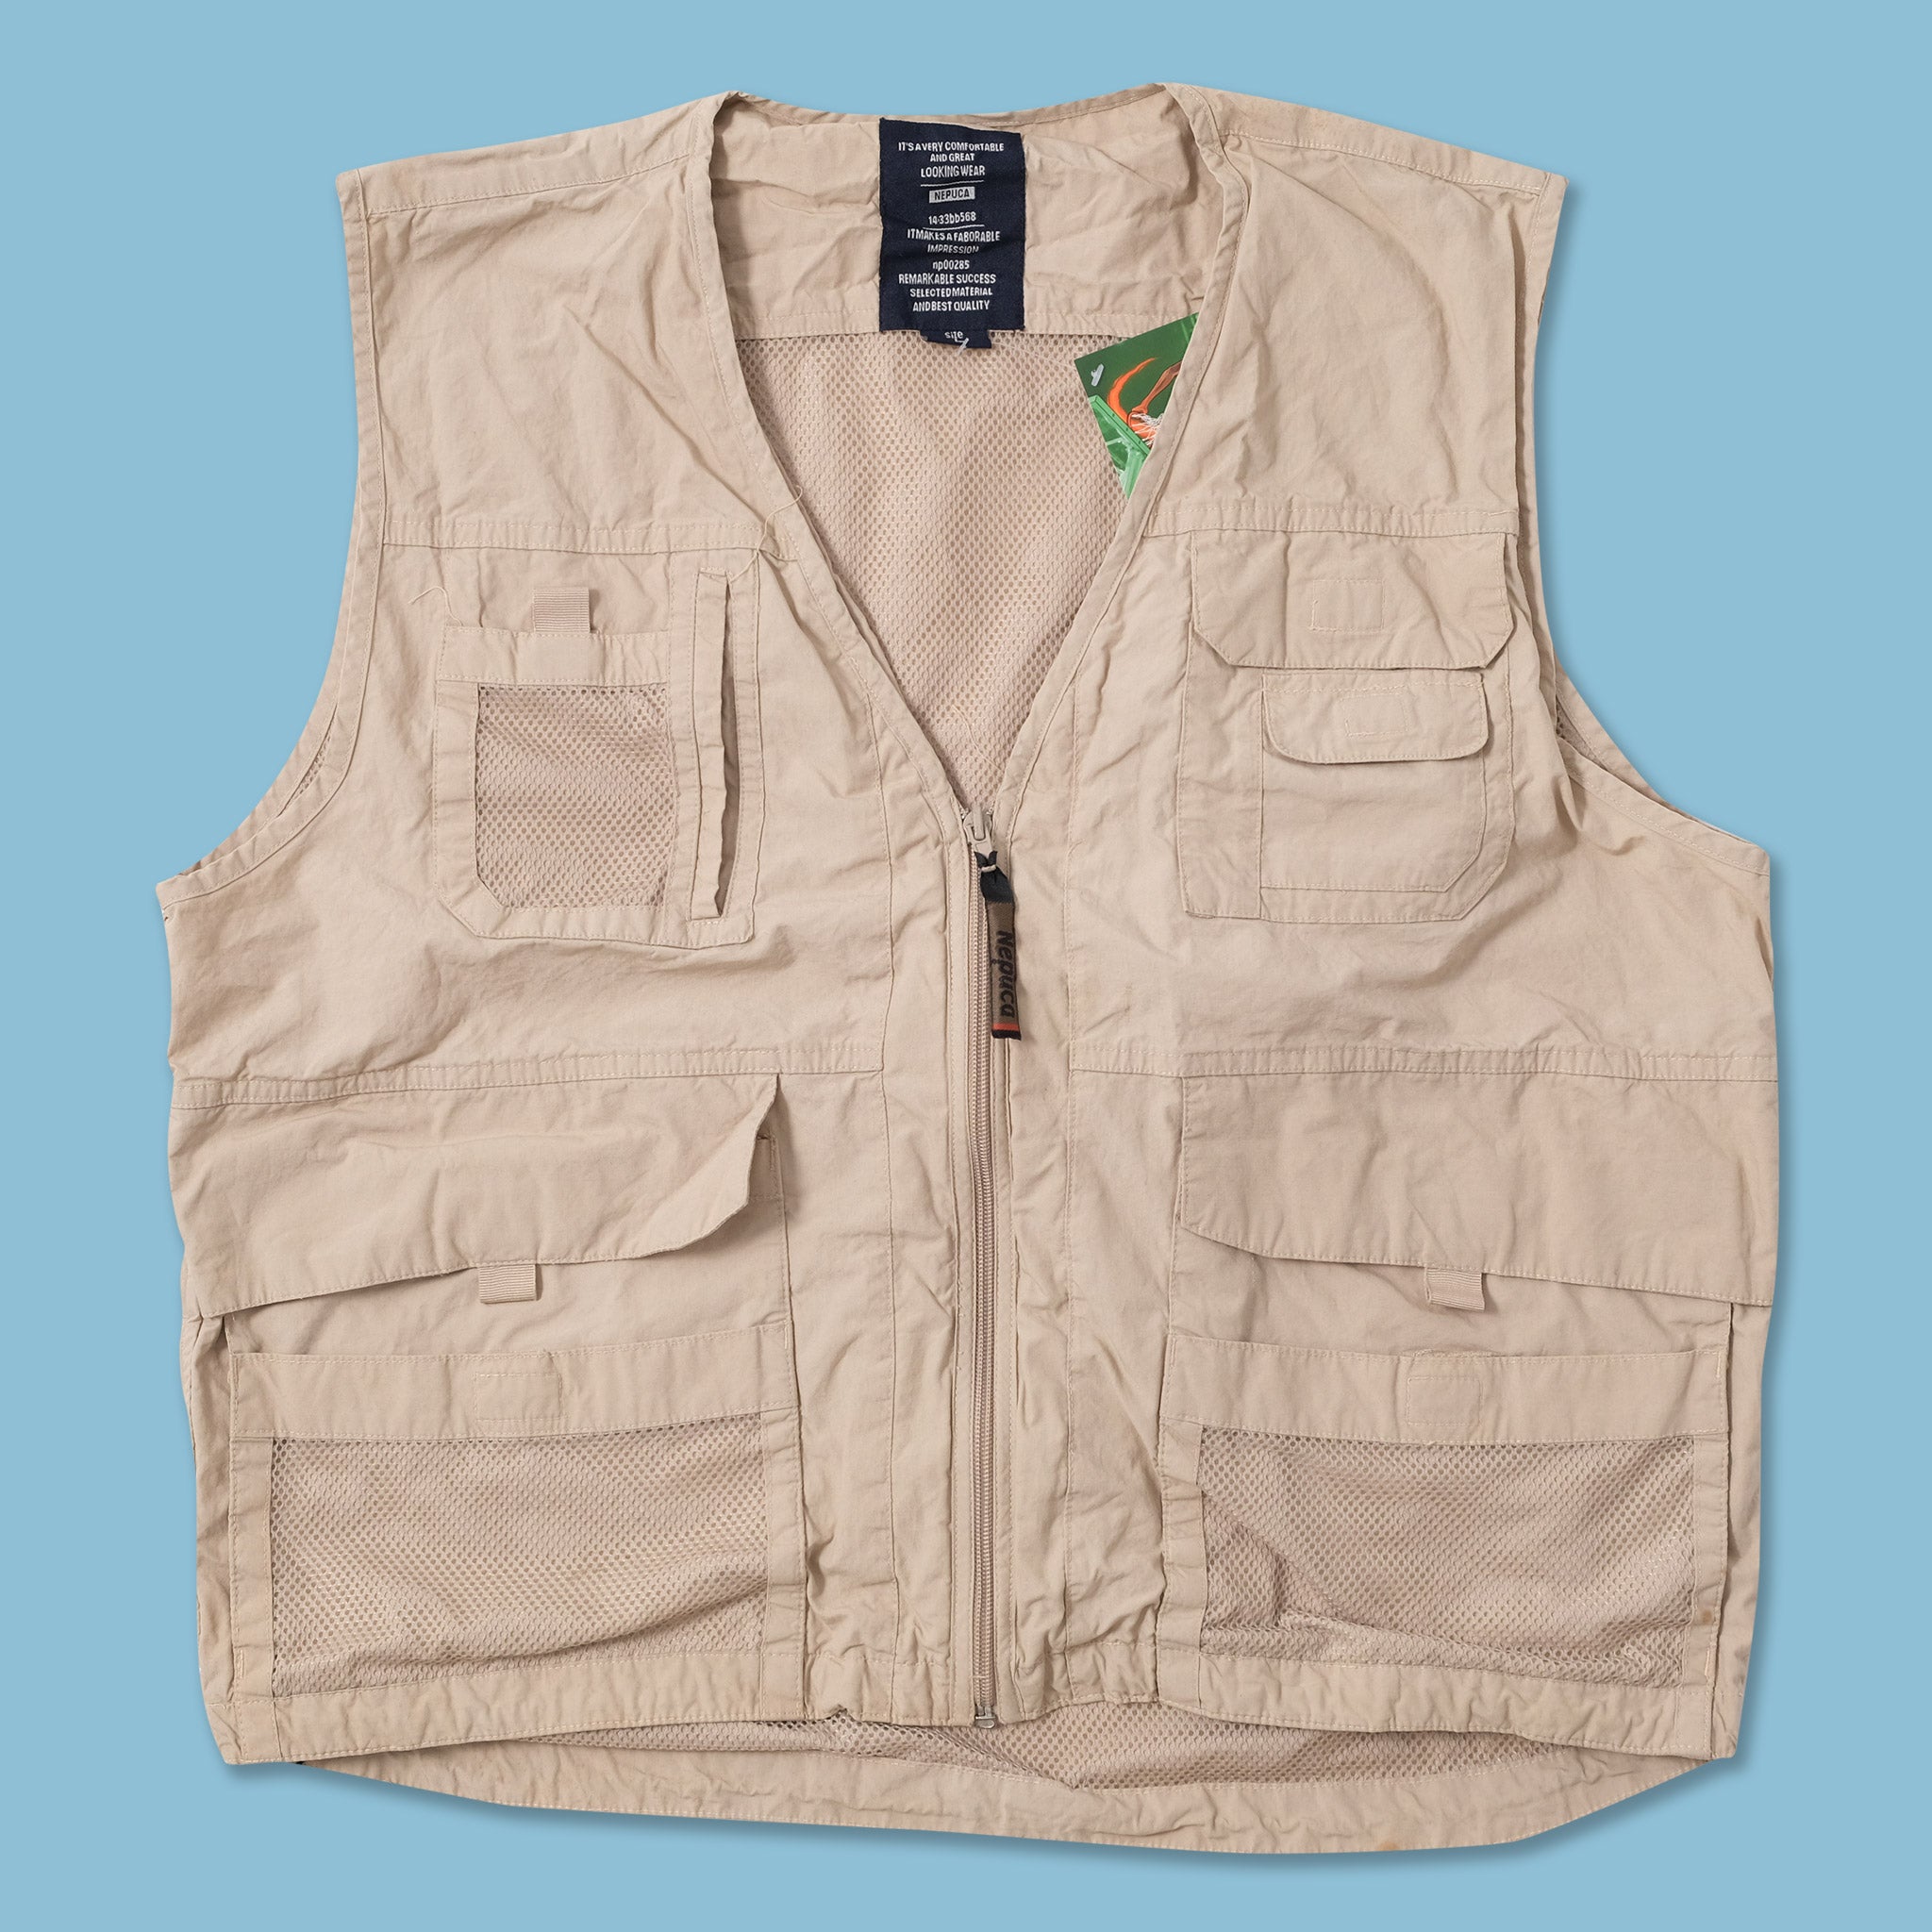 Pro utility vest - KS Teamwear